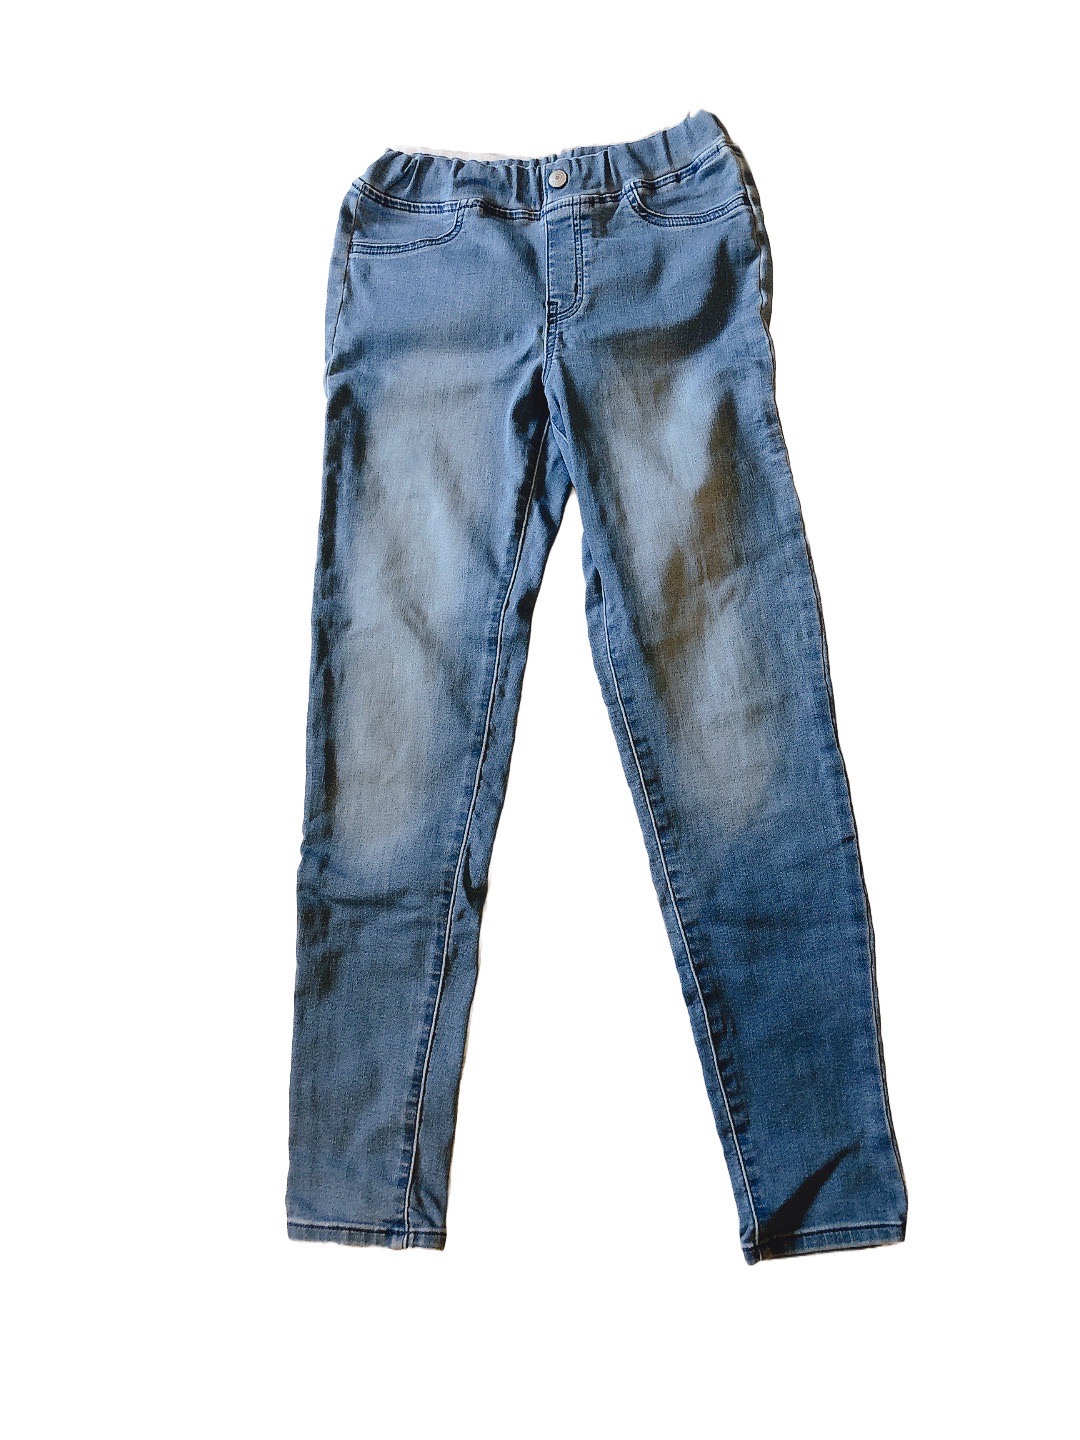 《GU》窄管彈性兒童青少年牛仔褲(150cm)
NT$149